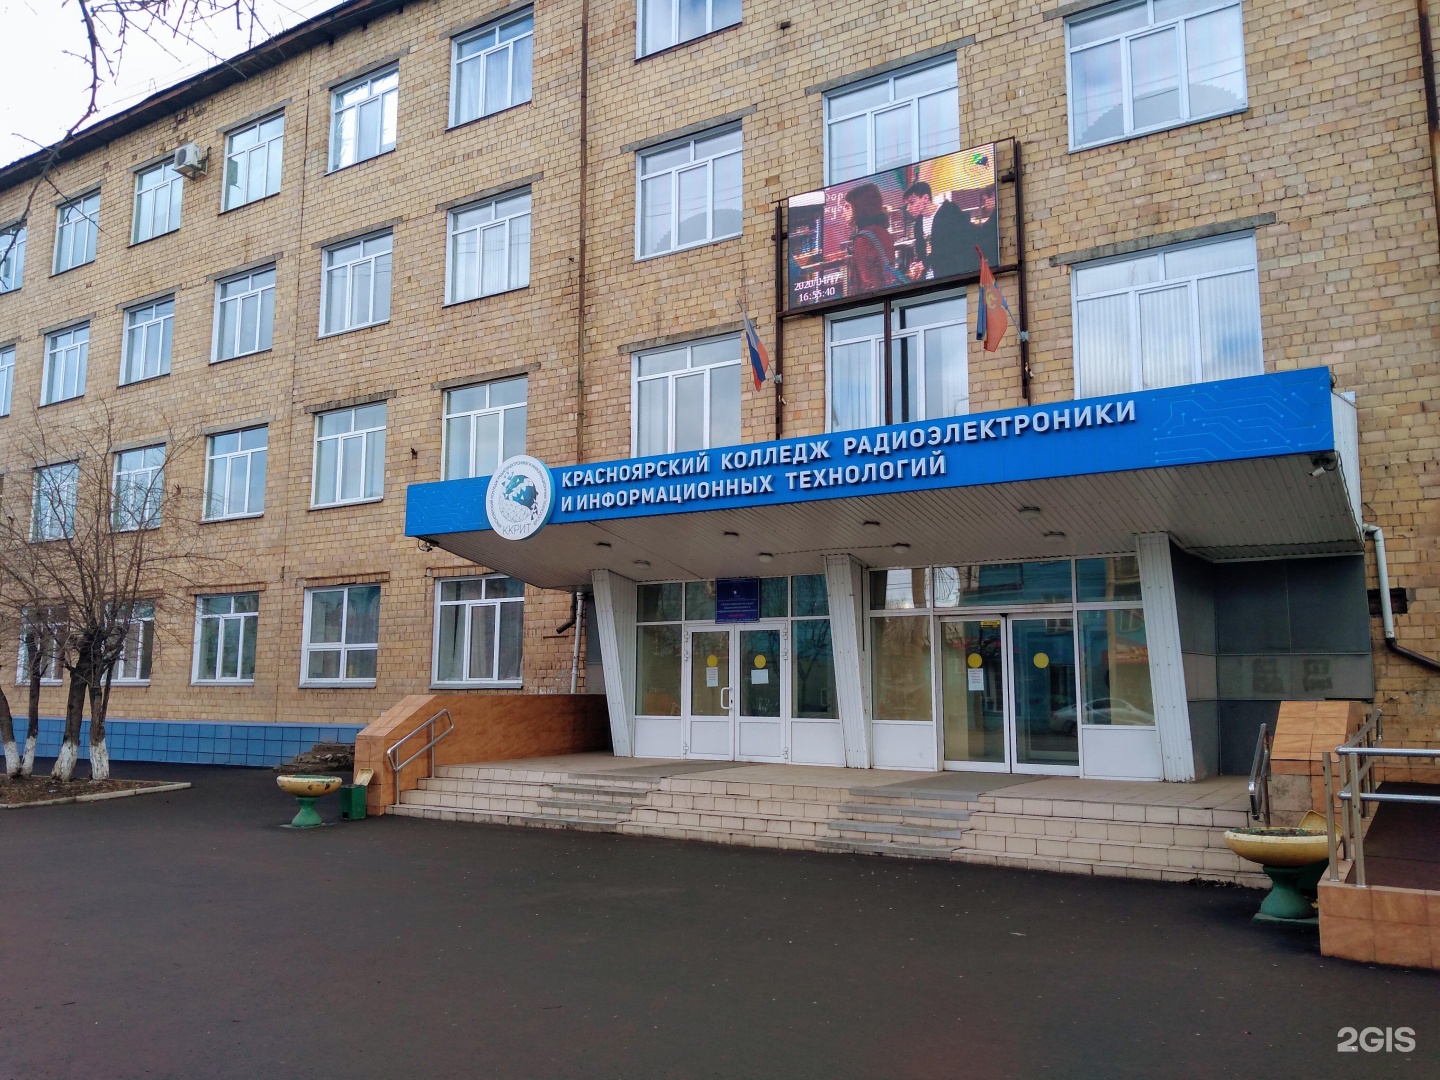 Красноярский колледж радиоэлектроники и информационных